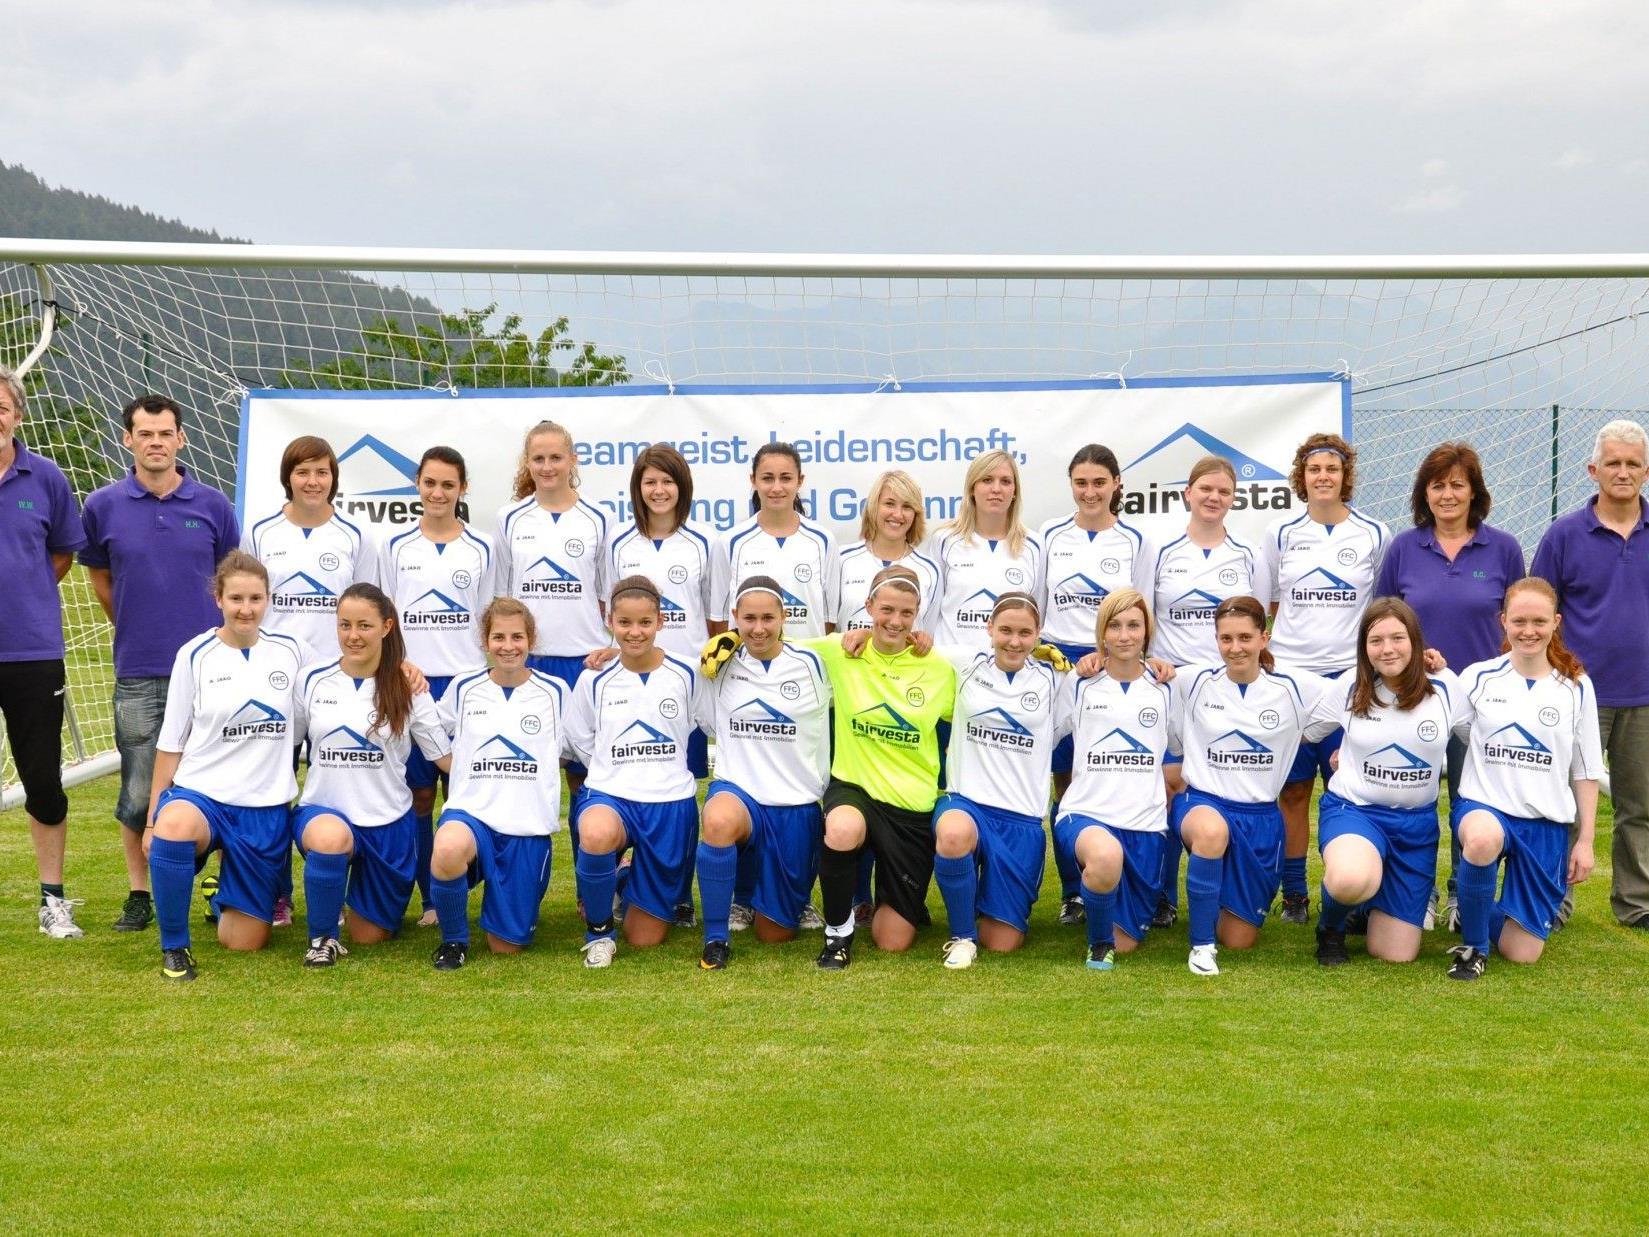 Die Erfolgreiche Frauenmannschaft des FFC Fairvesta Vorderland.